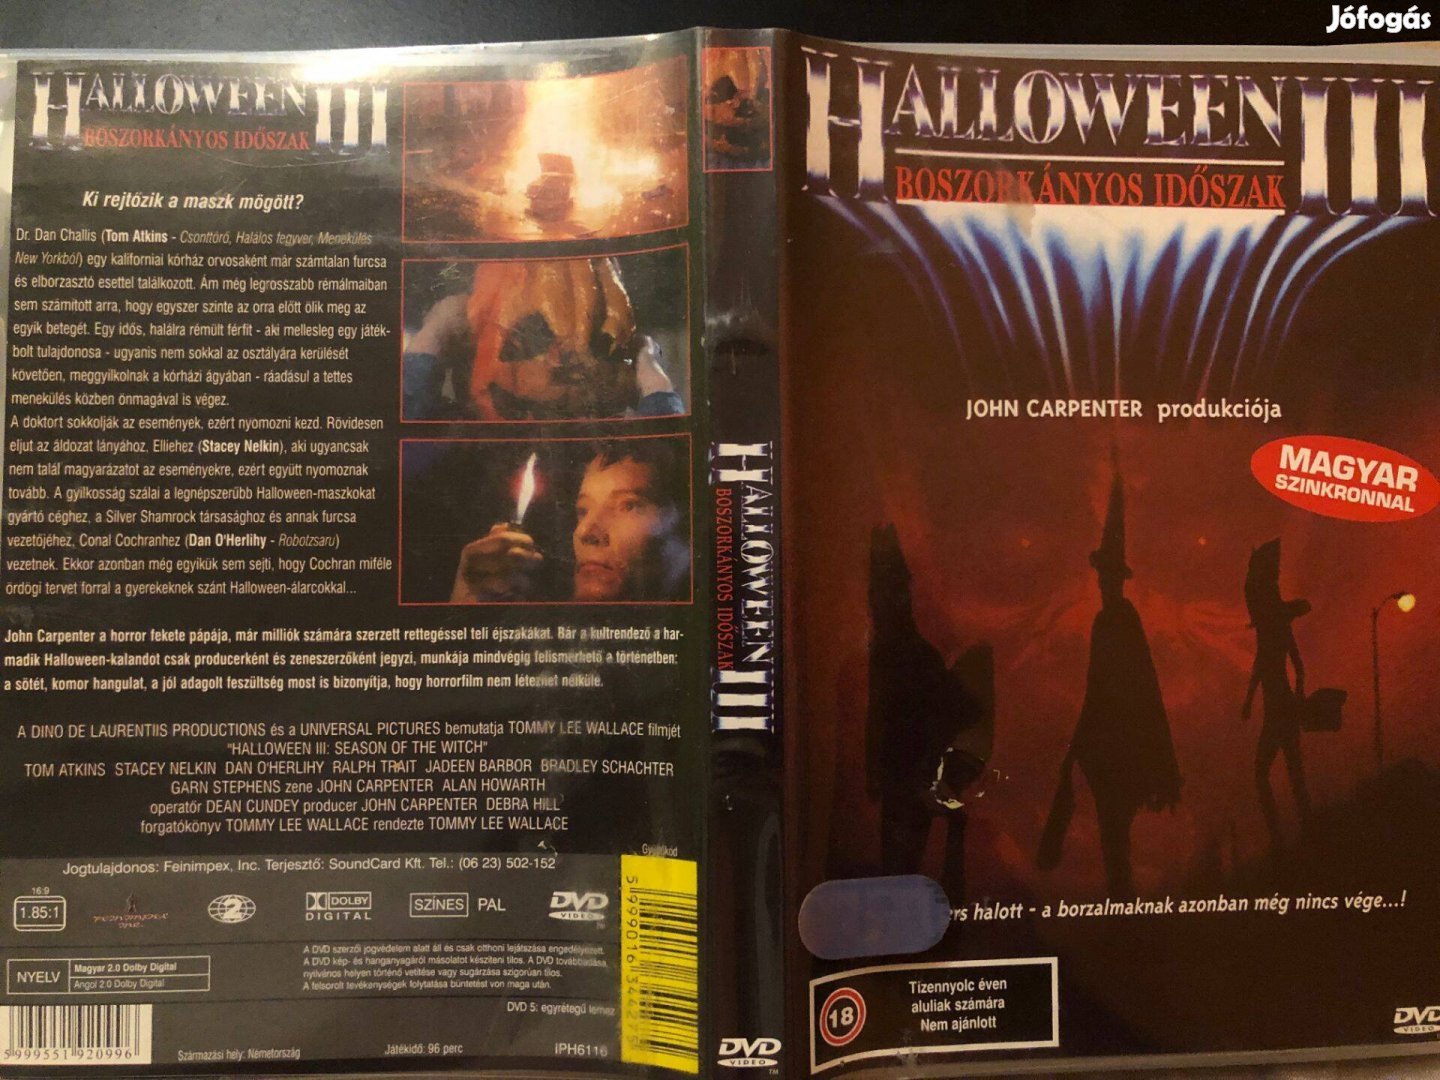 Halloween 3. Boszorkányos időszak (John Carpenter) DVD